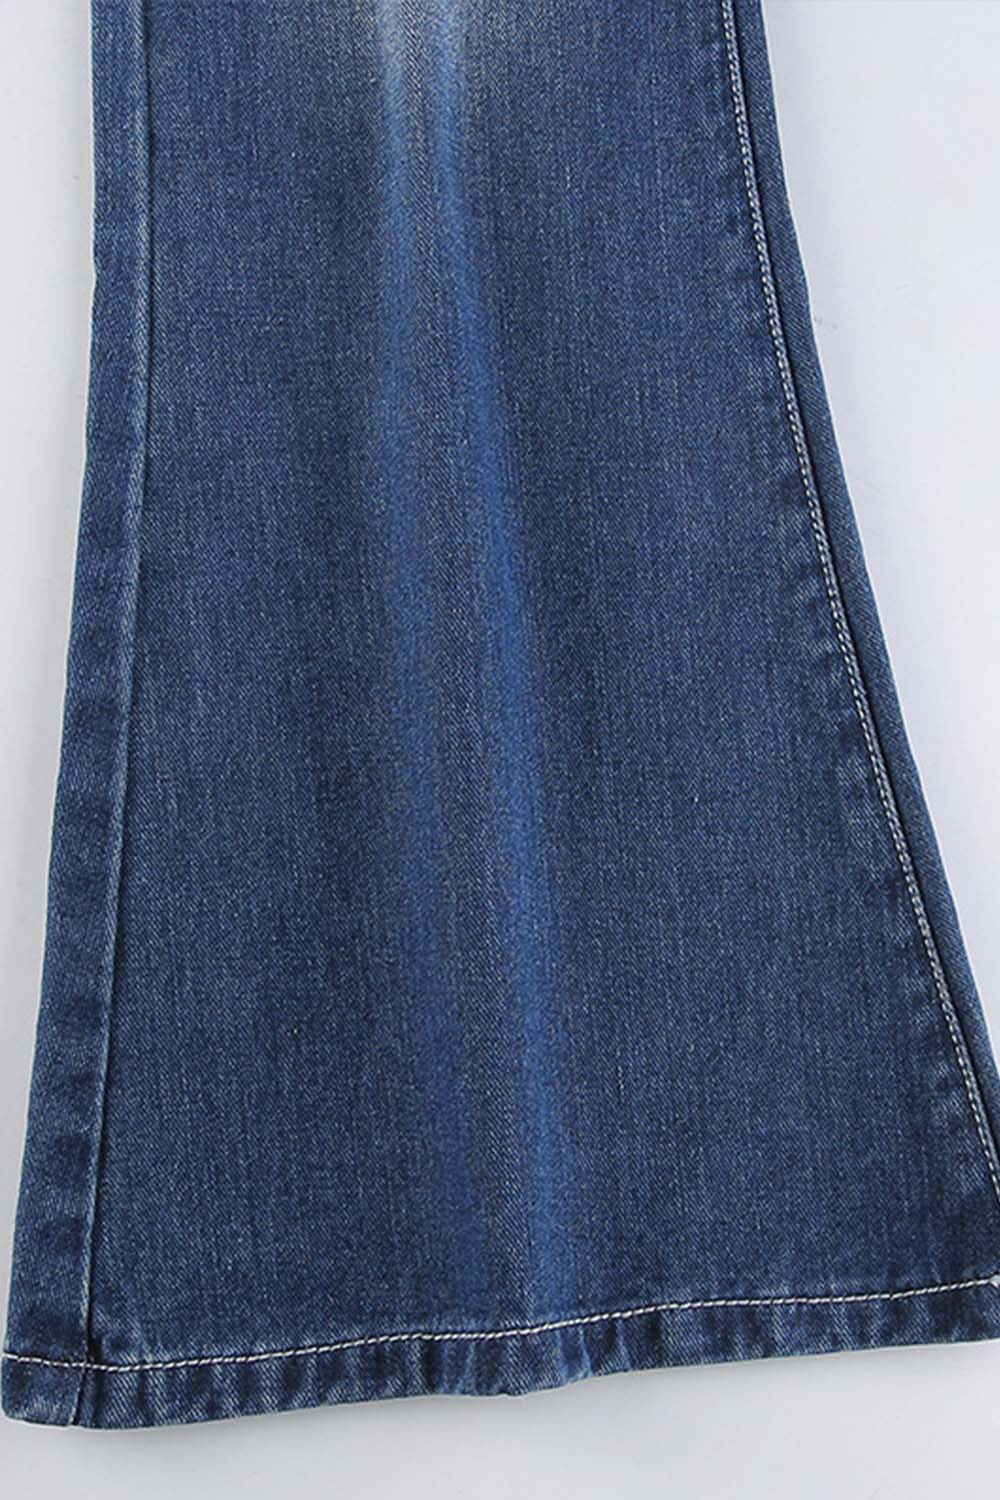 Low Waist Utility Pocket Denim Flare Bottom Jeans